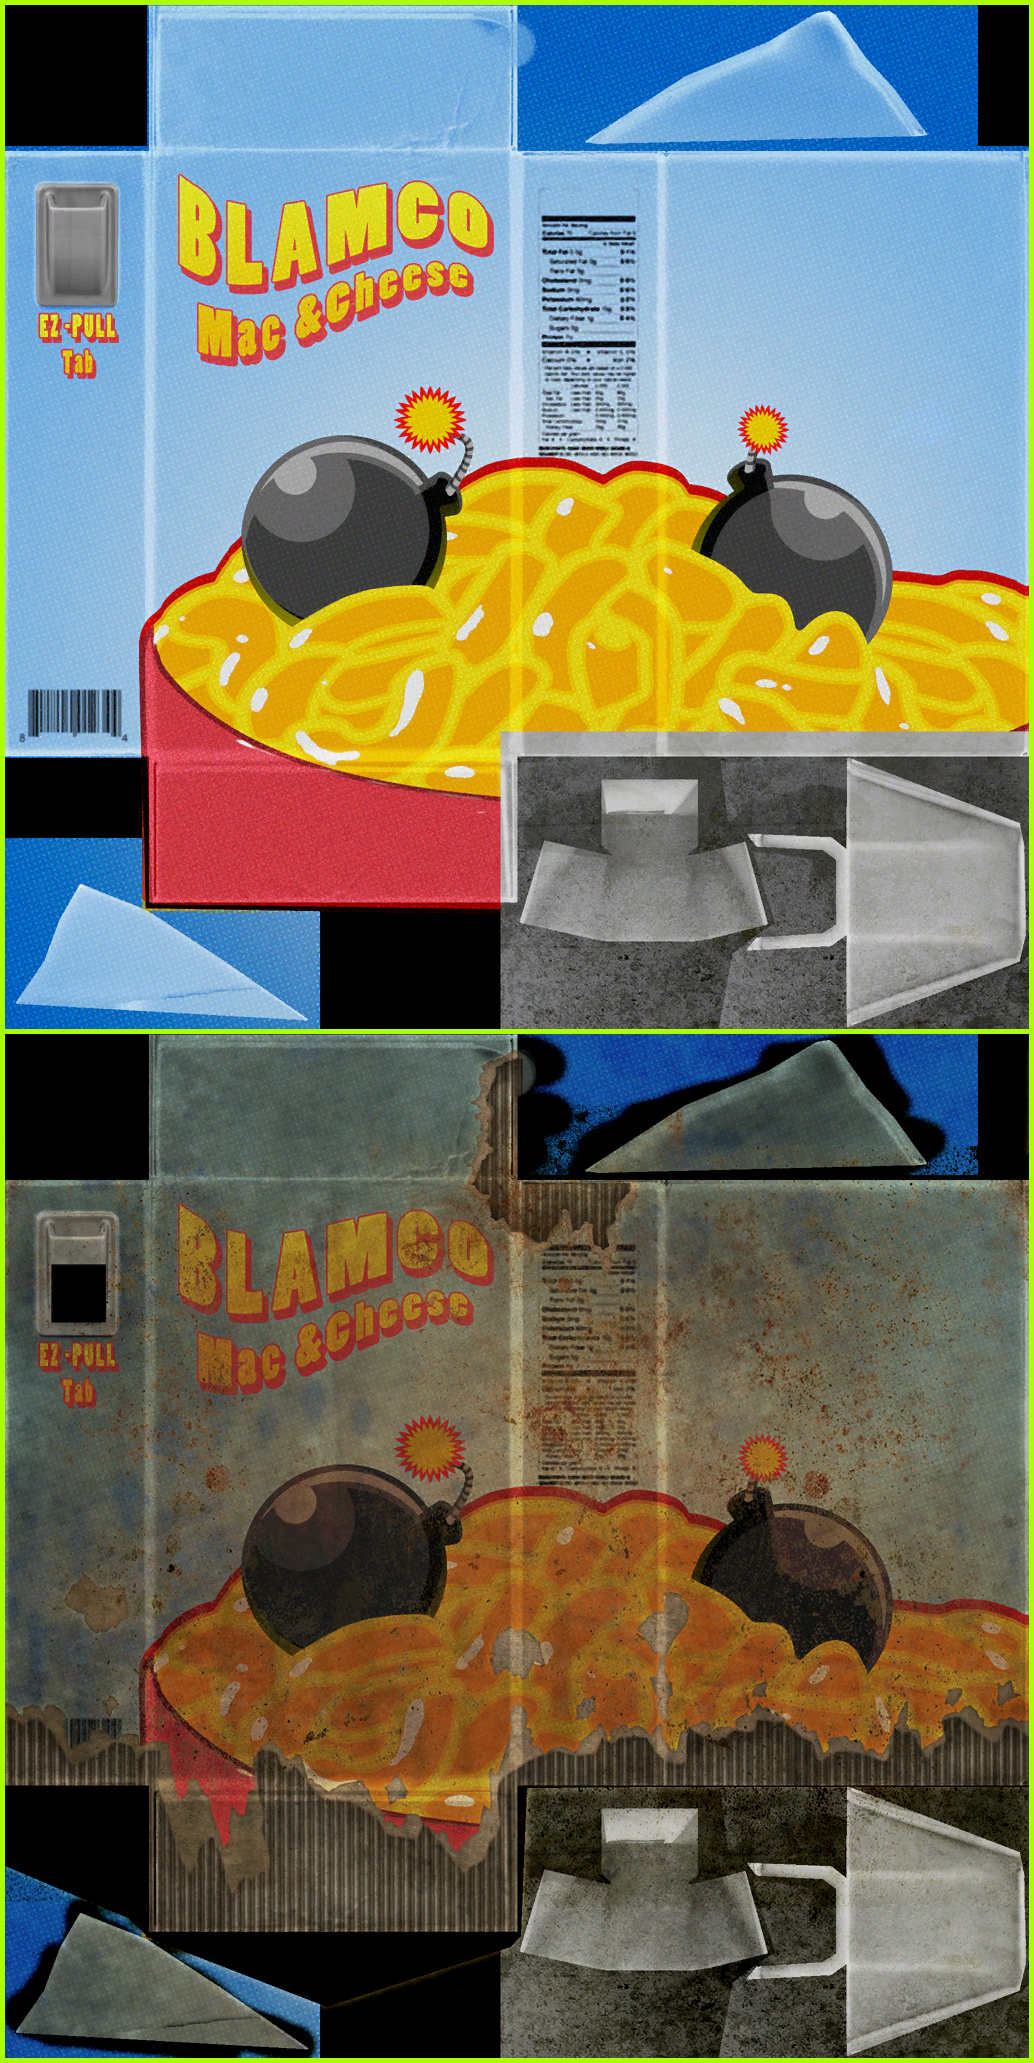 Fallout 4 - Blamco Mac & Cheese